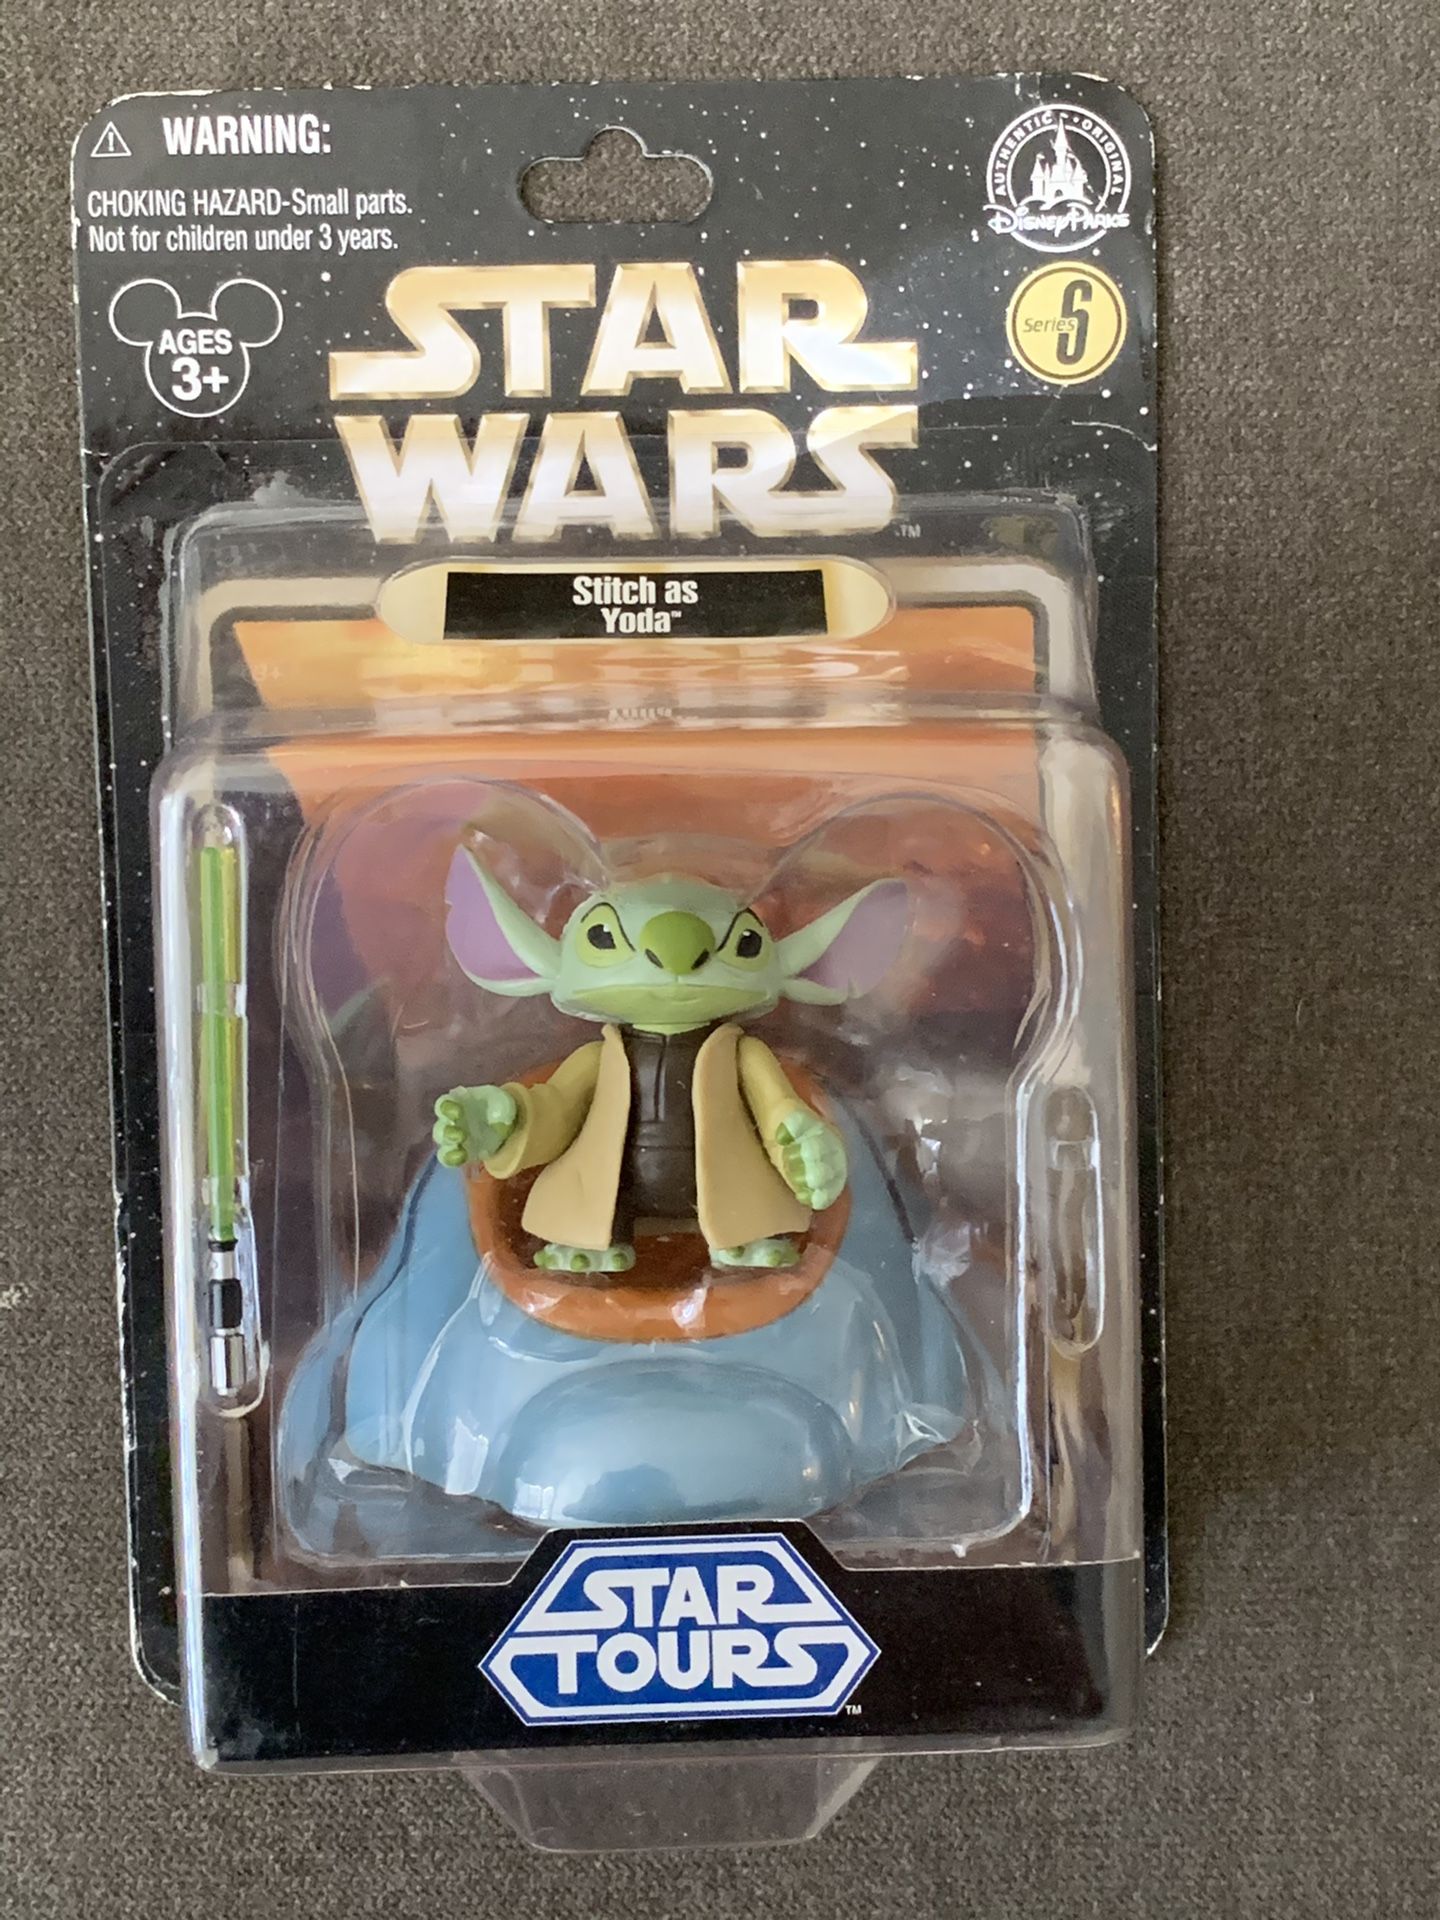 Star Tours Disney World Star Wars Stitch as Yoda